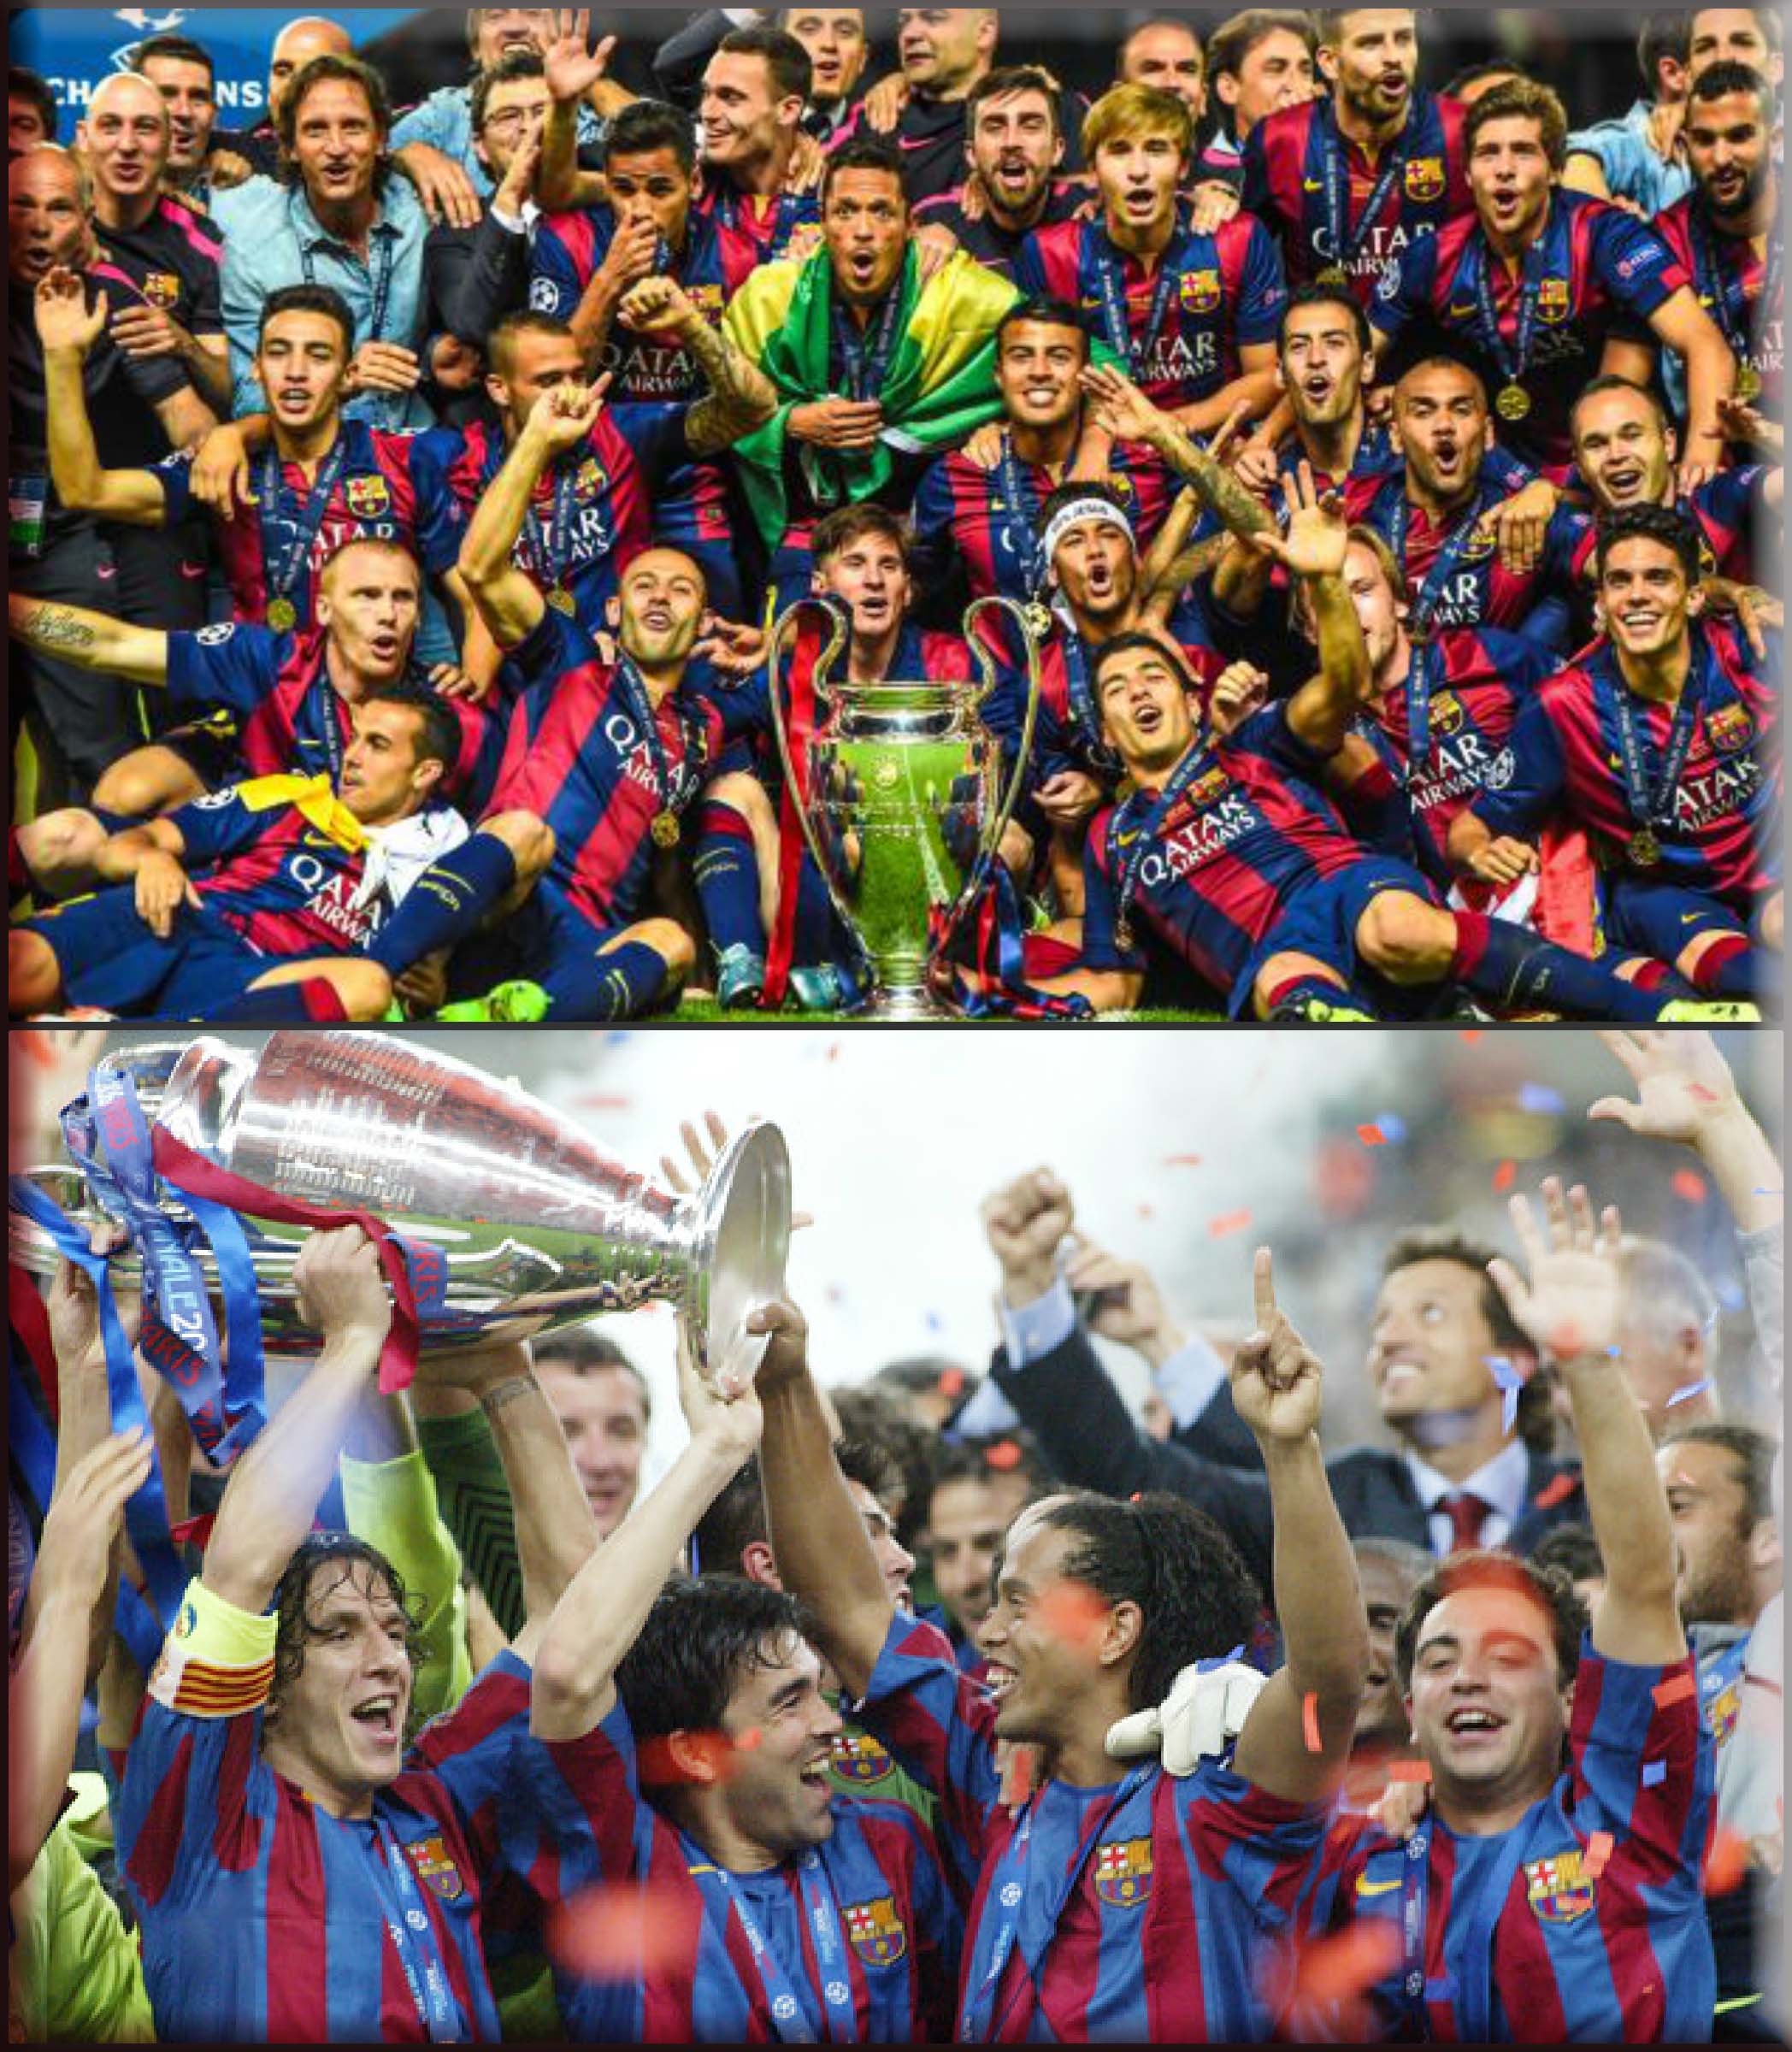 كم حقق فريق برشلونة لقب دوري الأبطال بـ 20 سنة الأخيرة (العقدين الأخيرين) ؟